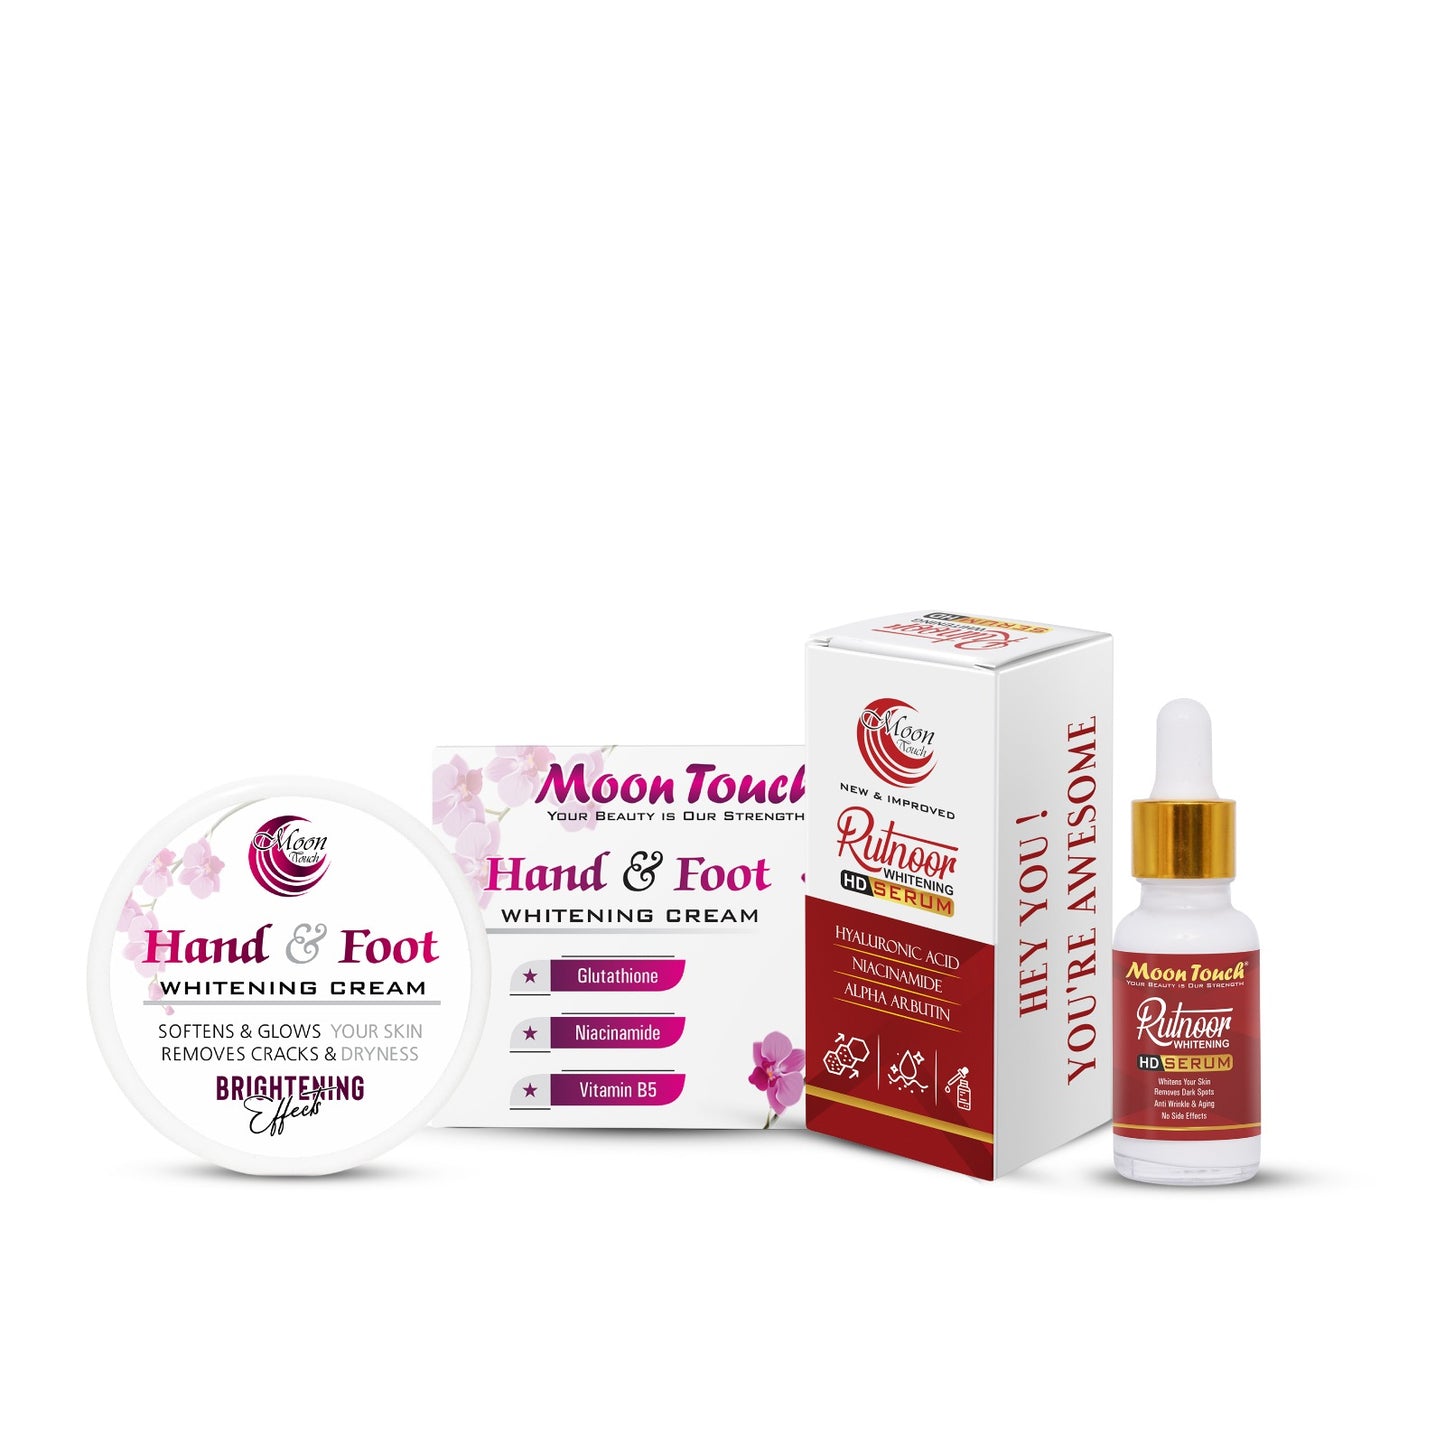 Hand & Foot Whitening Cream + Rutnoor Serum 20ml